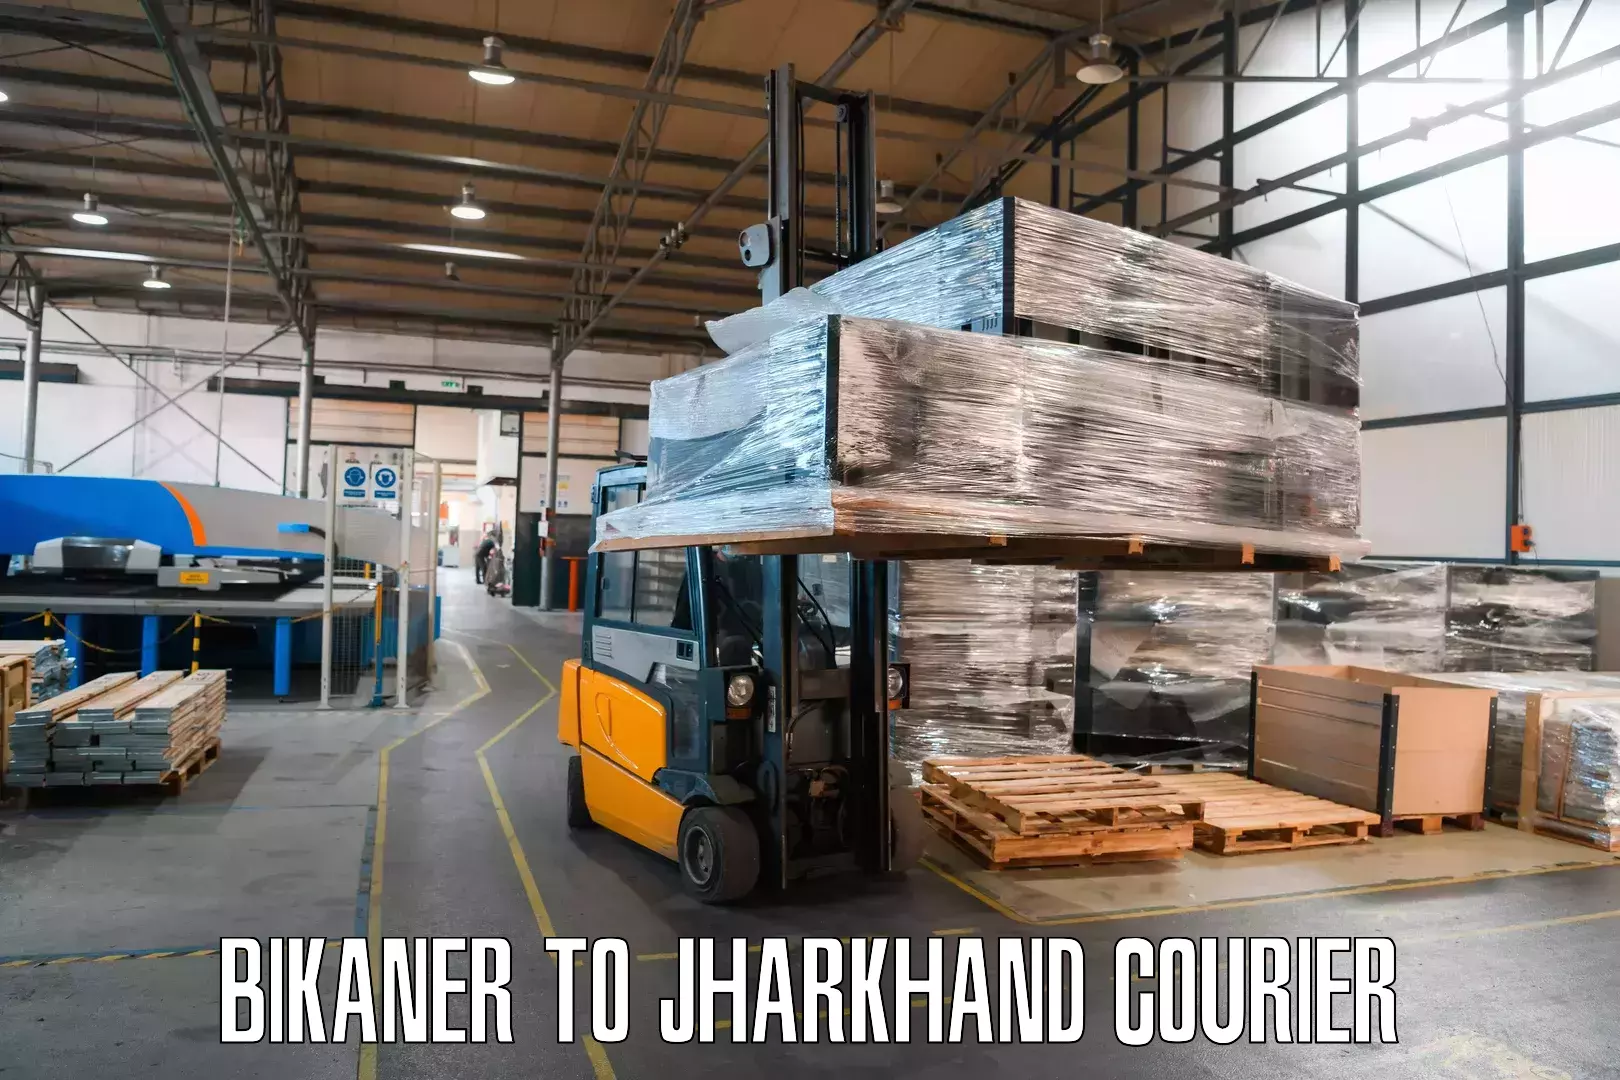 Customer-oriented courier services Bikaner to Medininagar